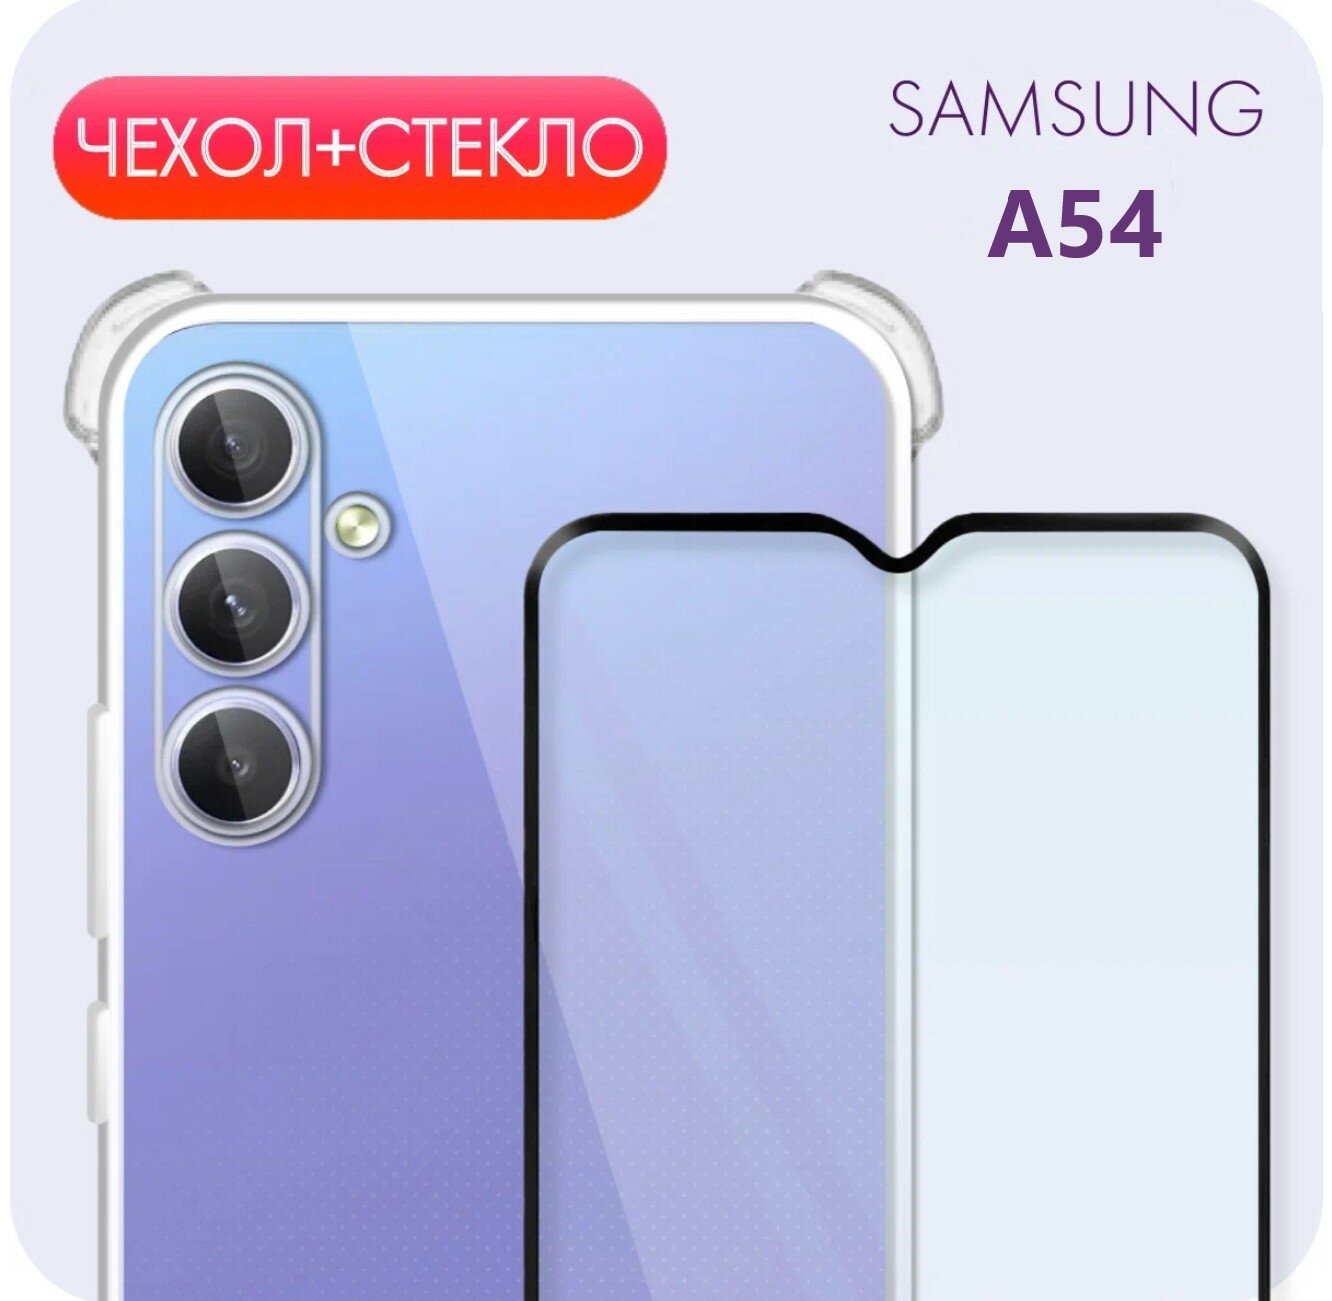 Комплект 2 в 1: Прозрачный чехол №03 с защитой камеры и углов + полноэкранное стекло для Samsung Galaxy A54 / Самсунг Галакси А54 / Самсунг Гелекси